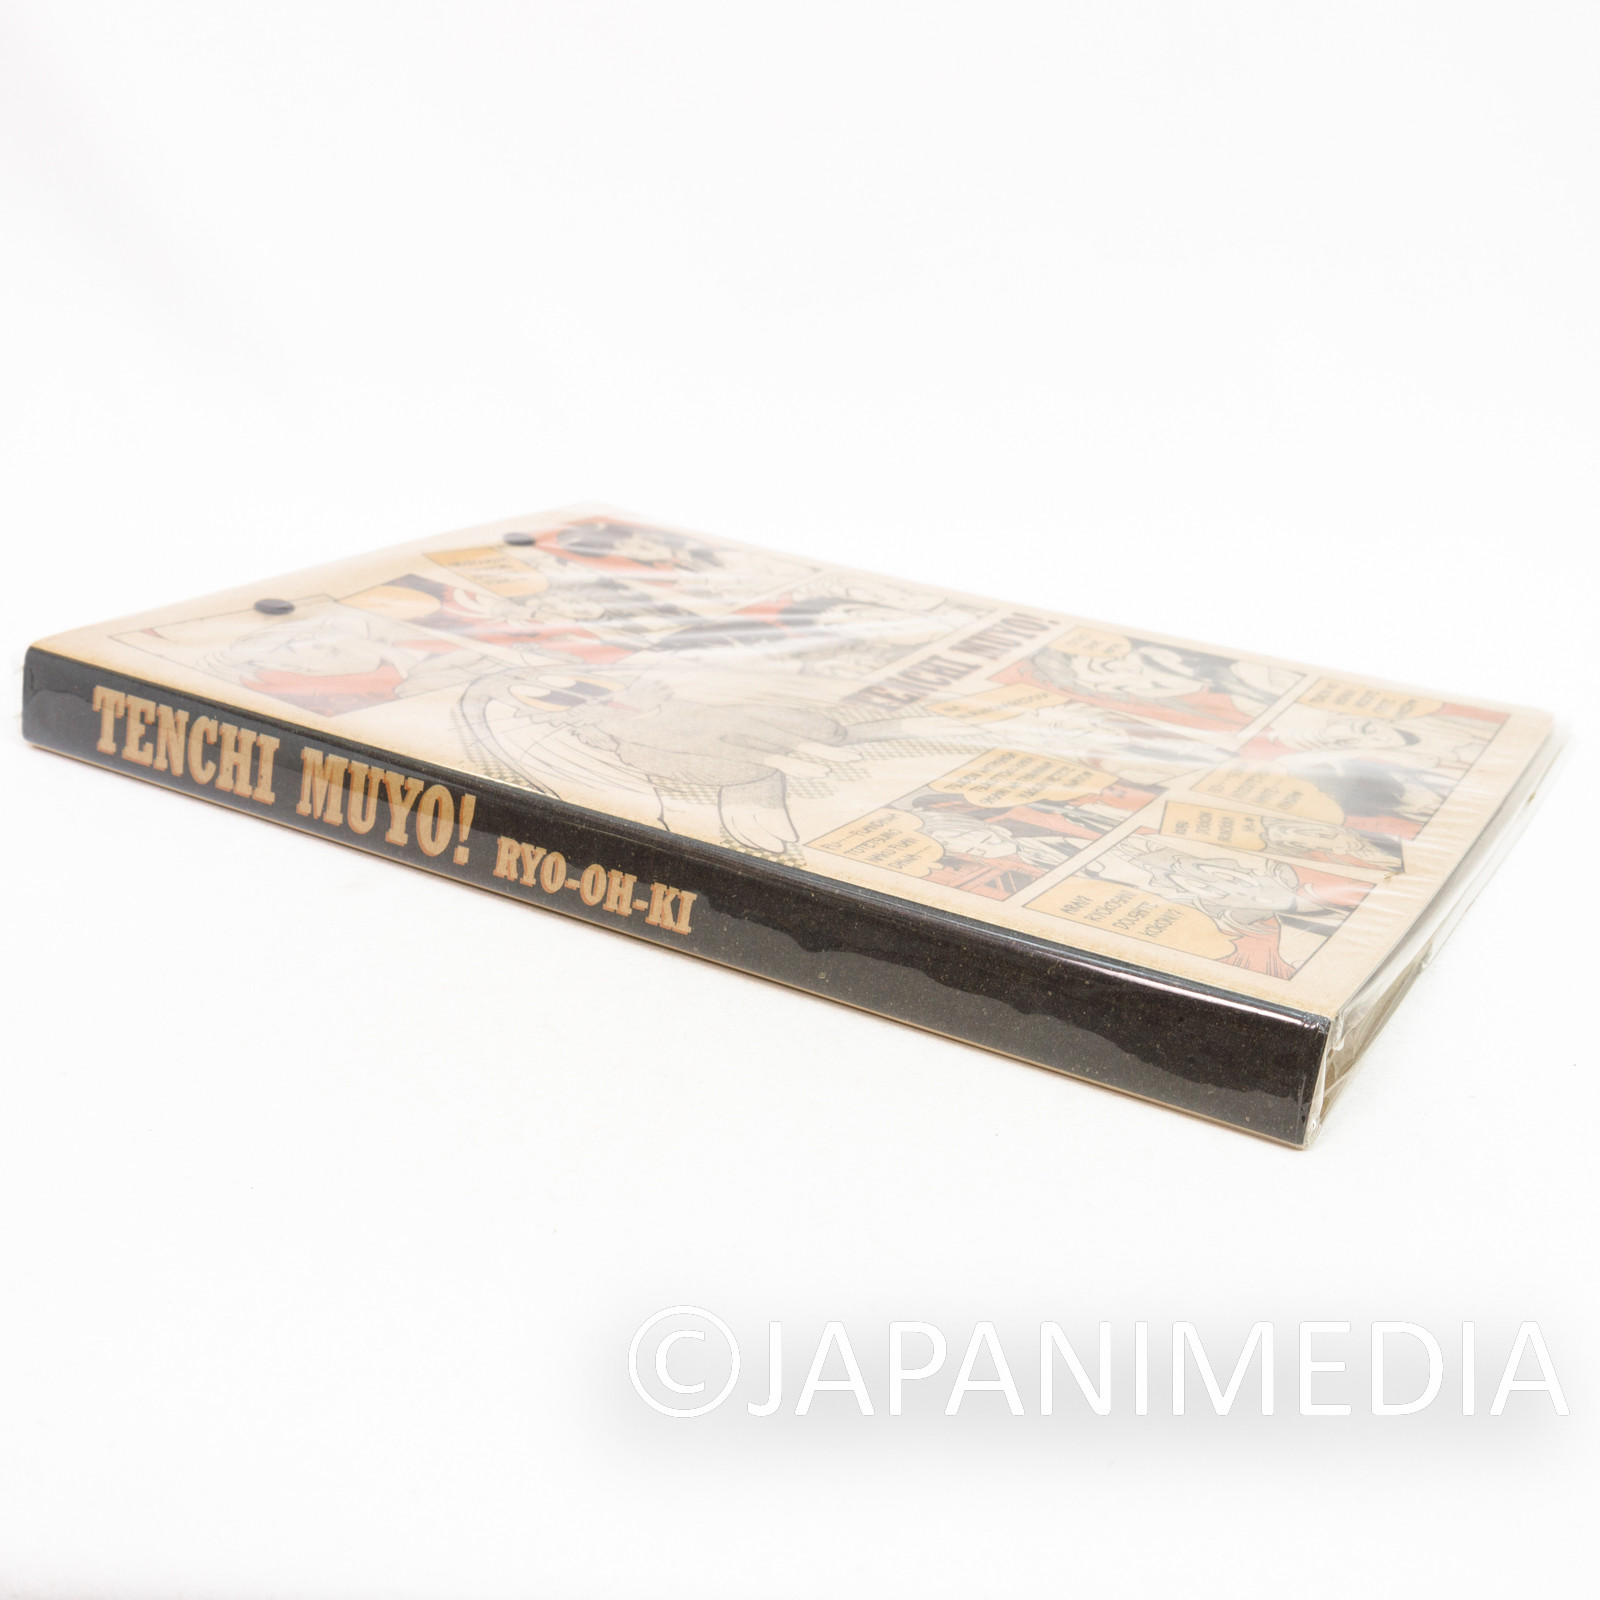 Tenchi Muyo Ryo-oh-ki Ryoko Sasami Loose-leaf Binder Movic JAPAN ANIME MANGA